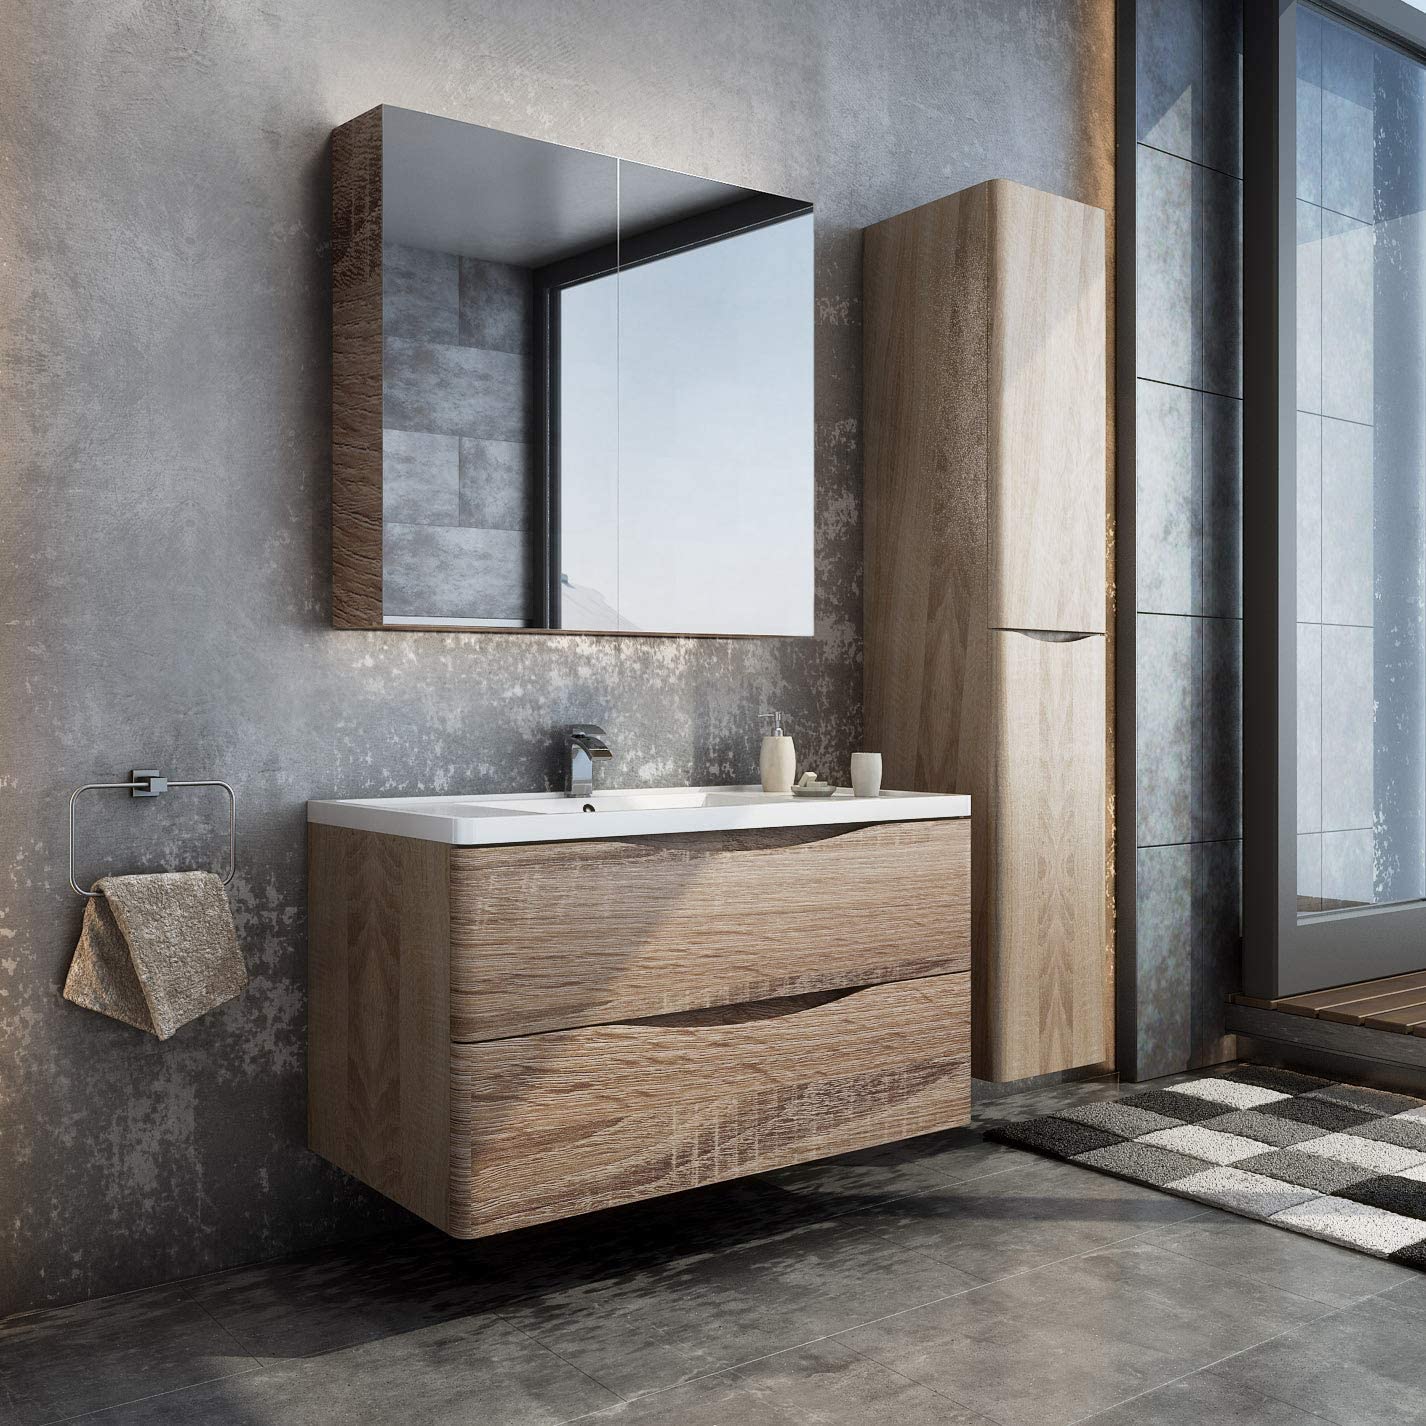 Koozzo Bathroom 36” Wall Mount Vanity Cabinet